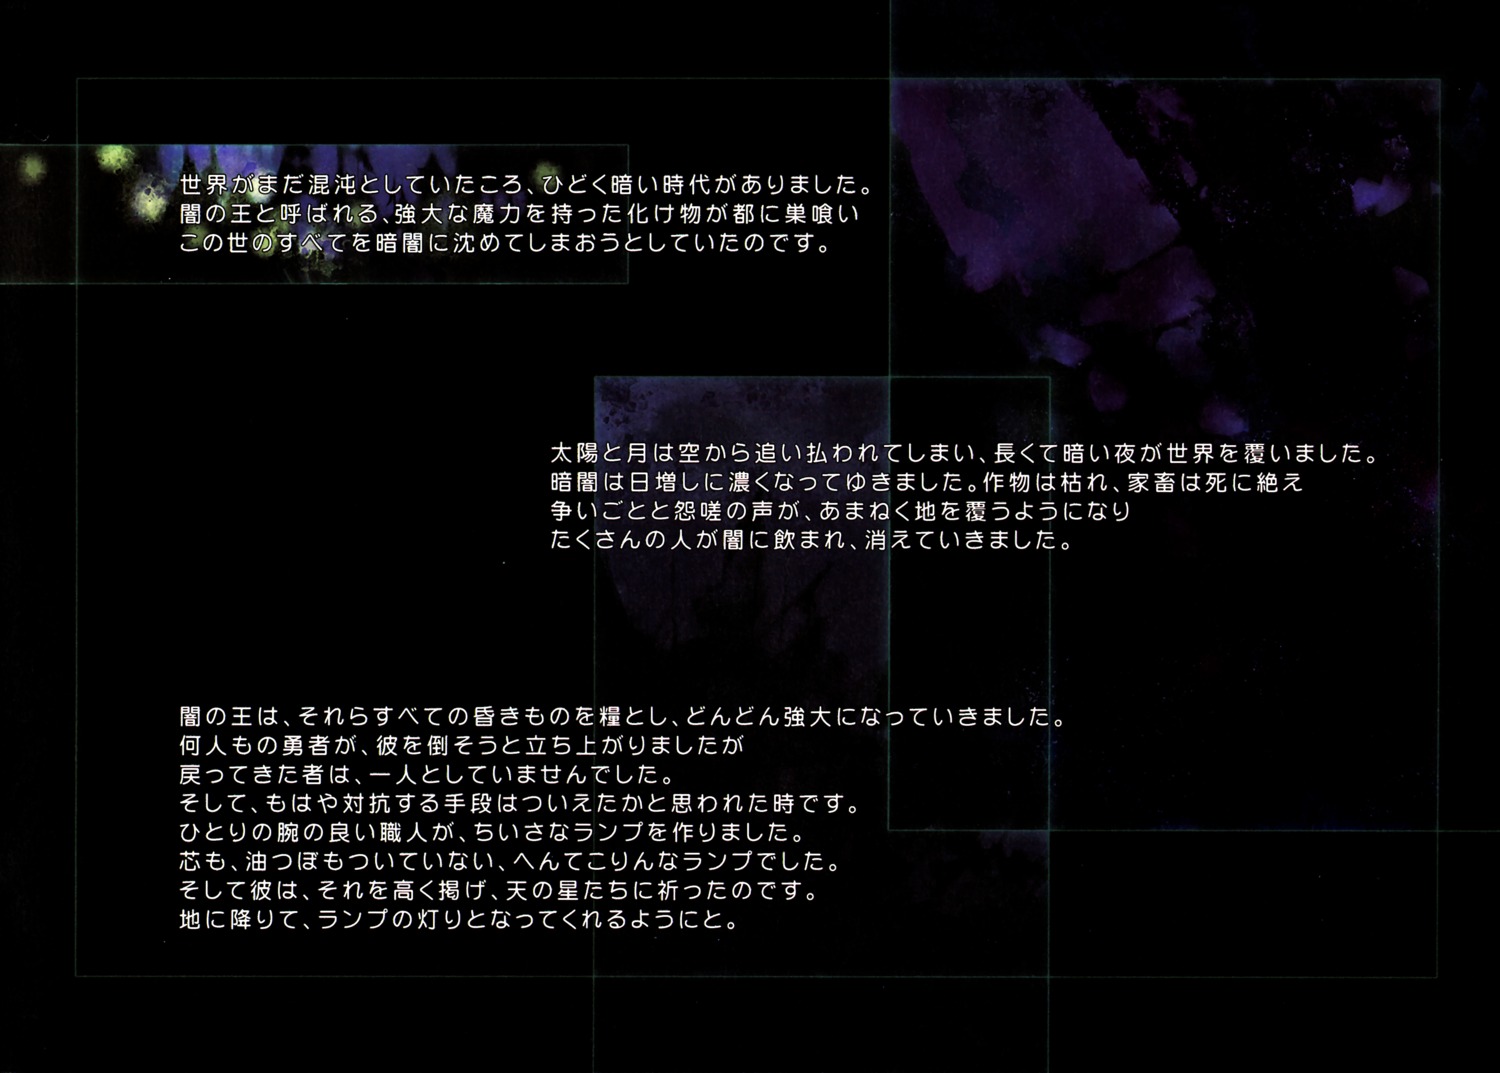 kuramoto_kaya little_stars_on_the_earth text